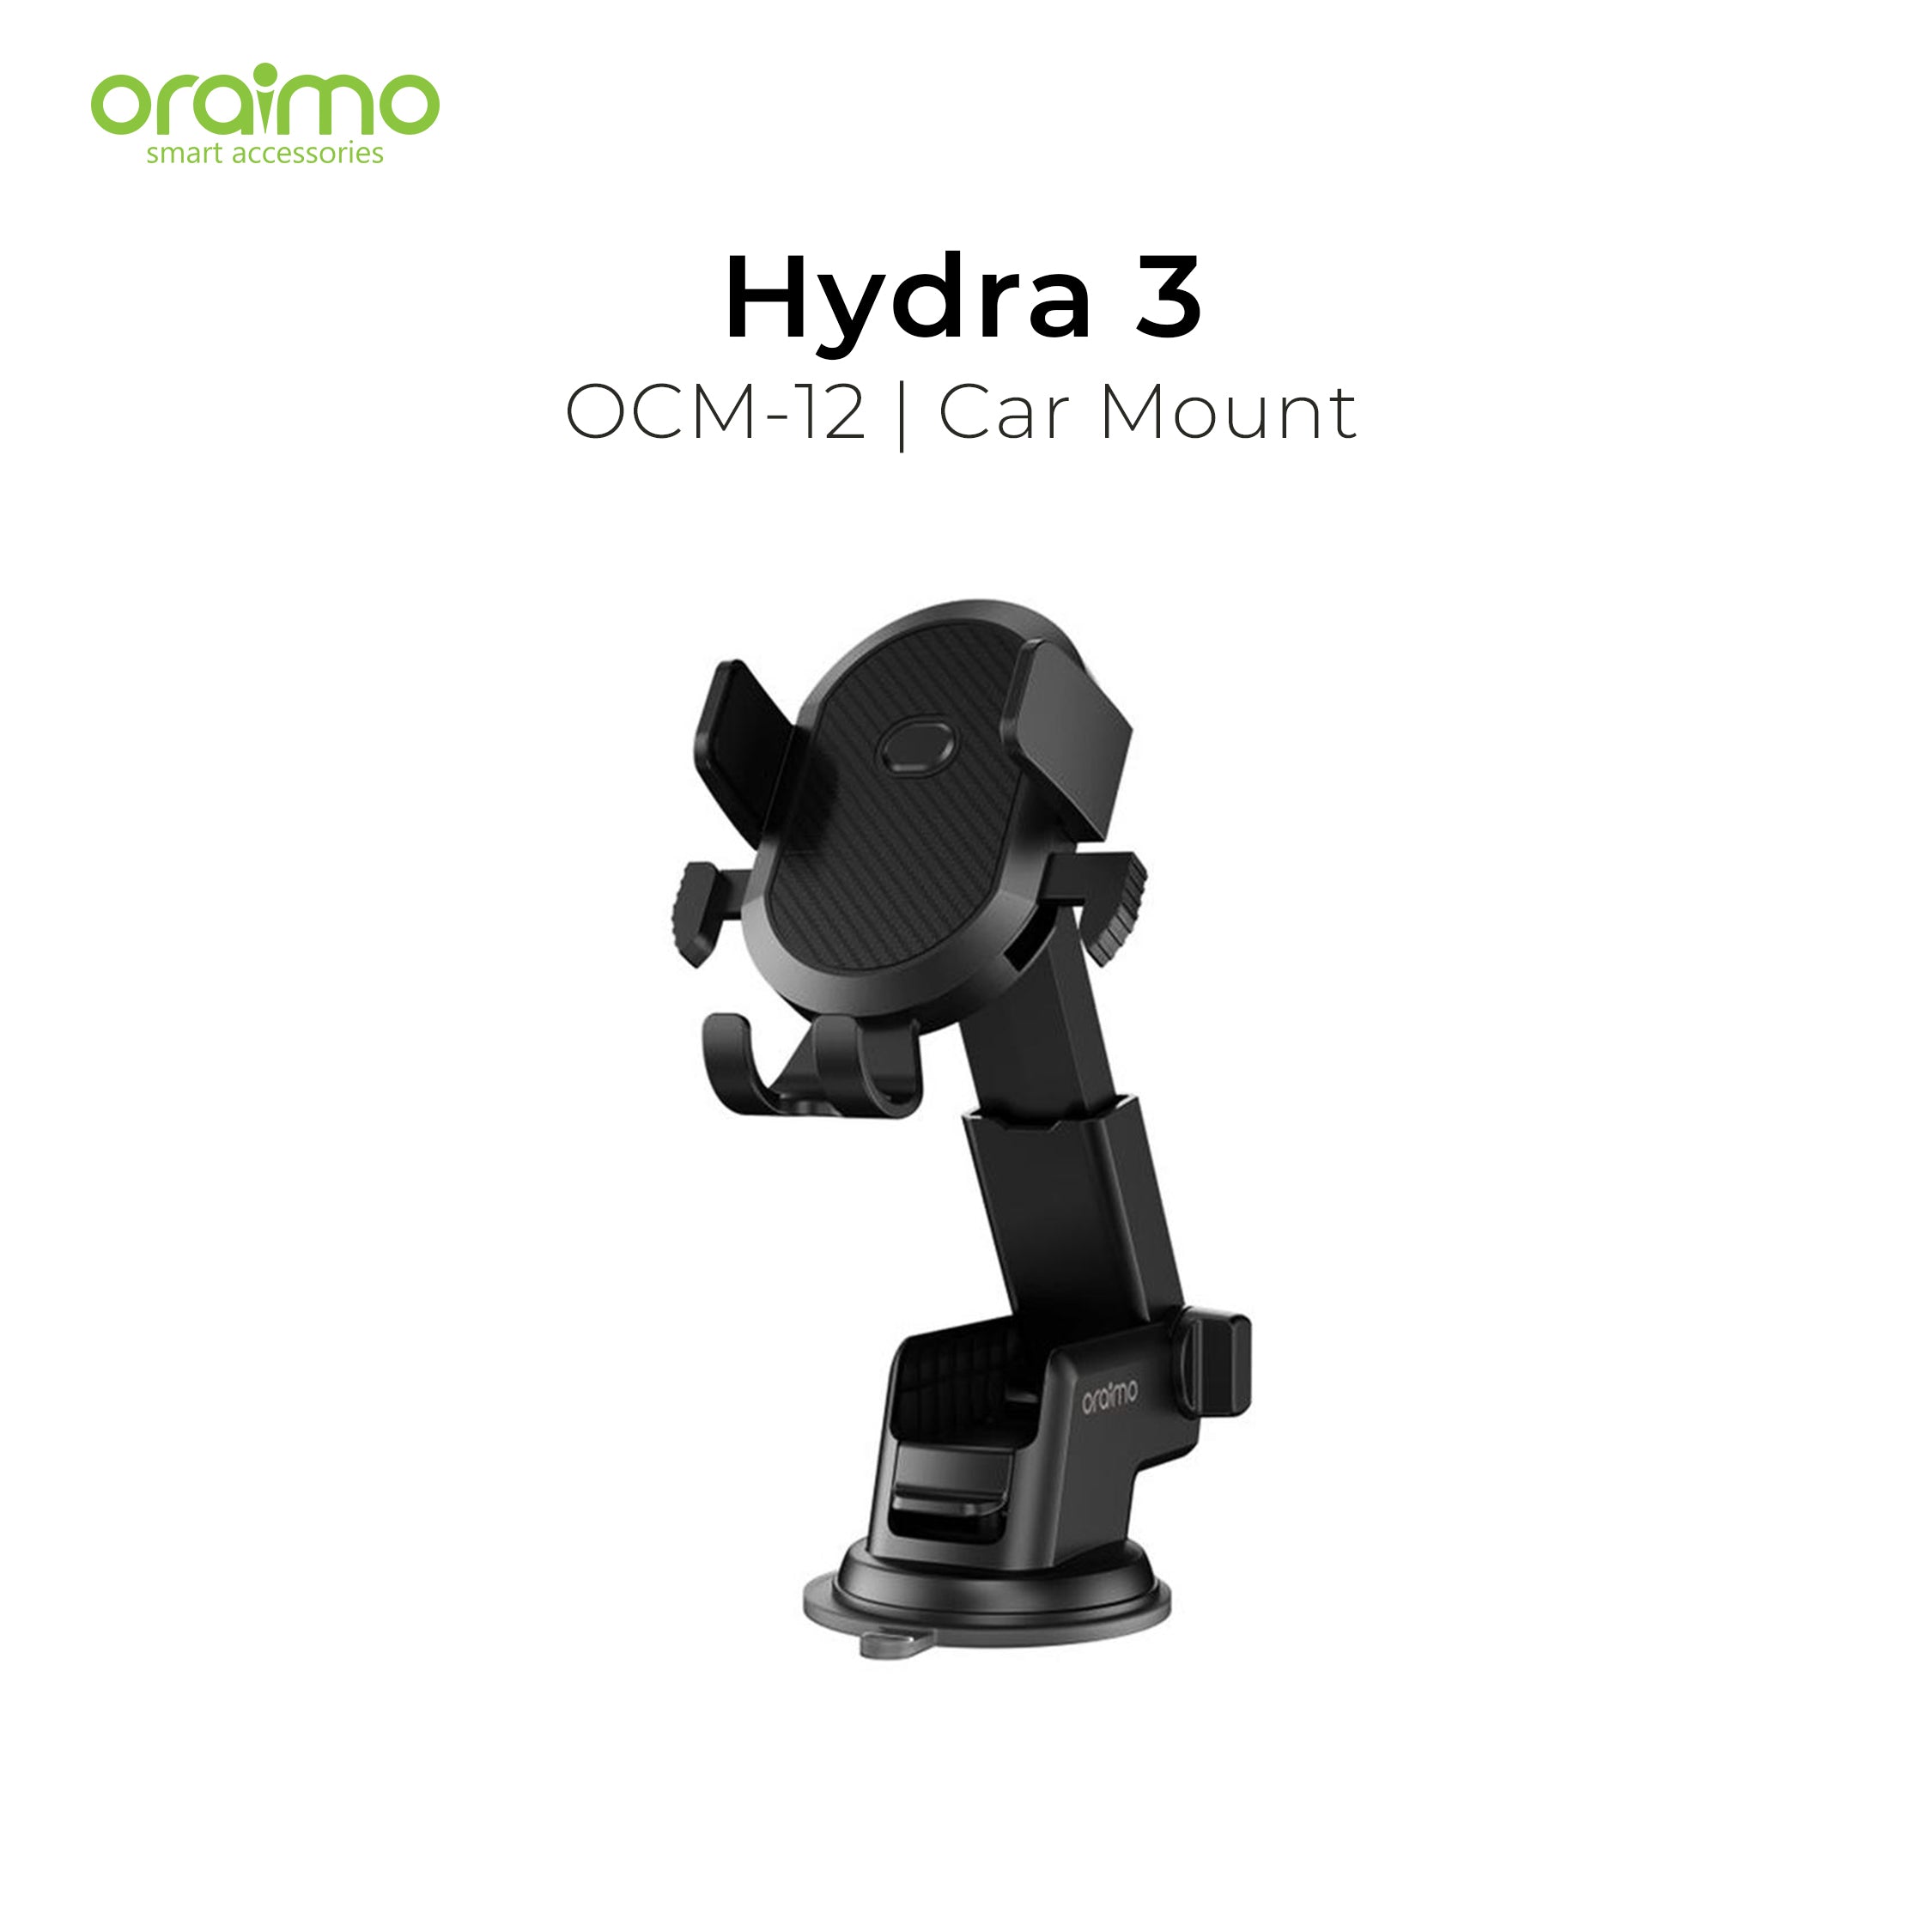 Oraimo Hydra 3 Car Mount OCM-12